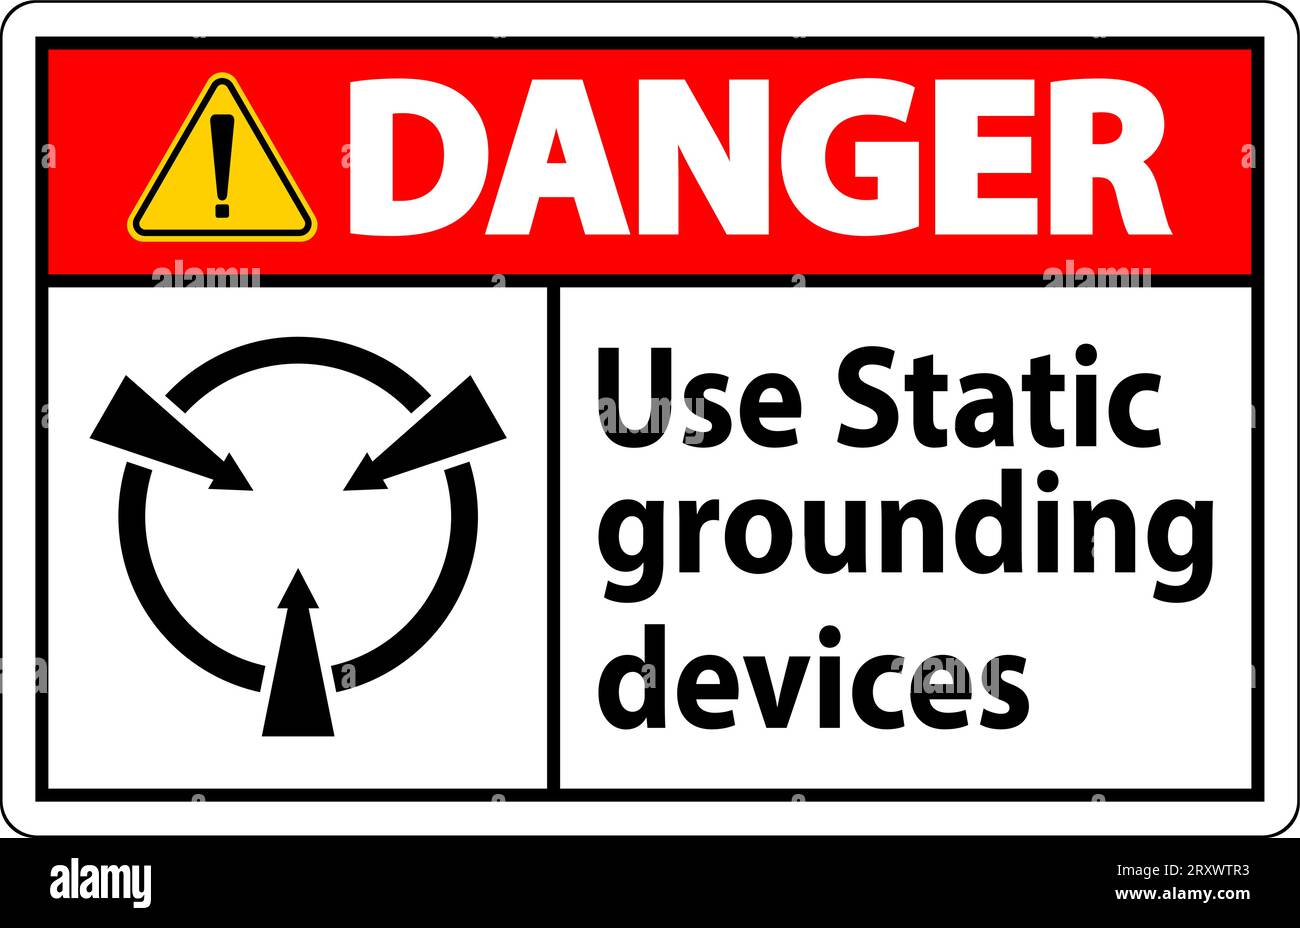 Panneau danger utiliser des dispositifs de mise à la terre statiques Illustration de Vecteur